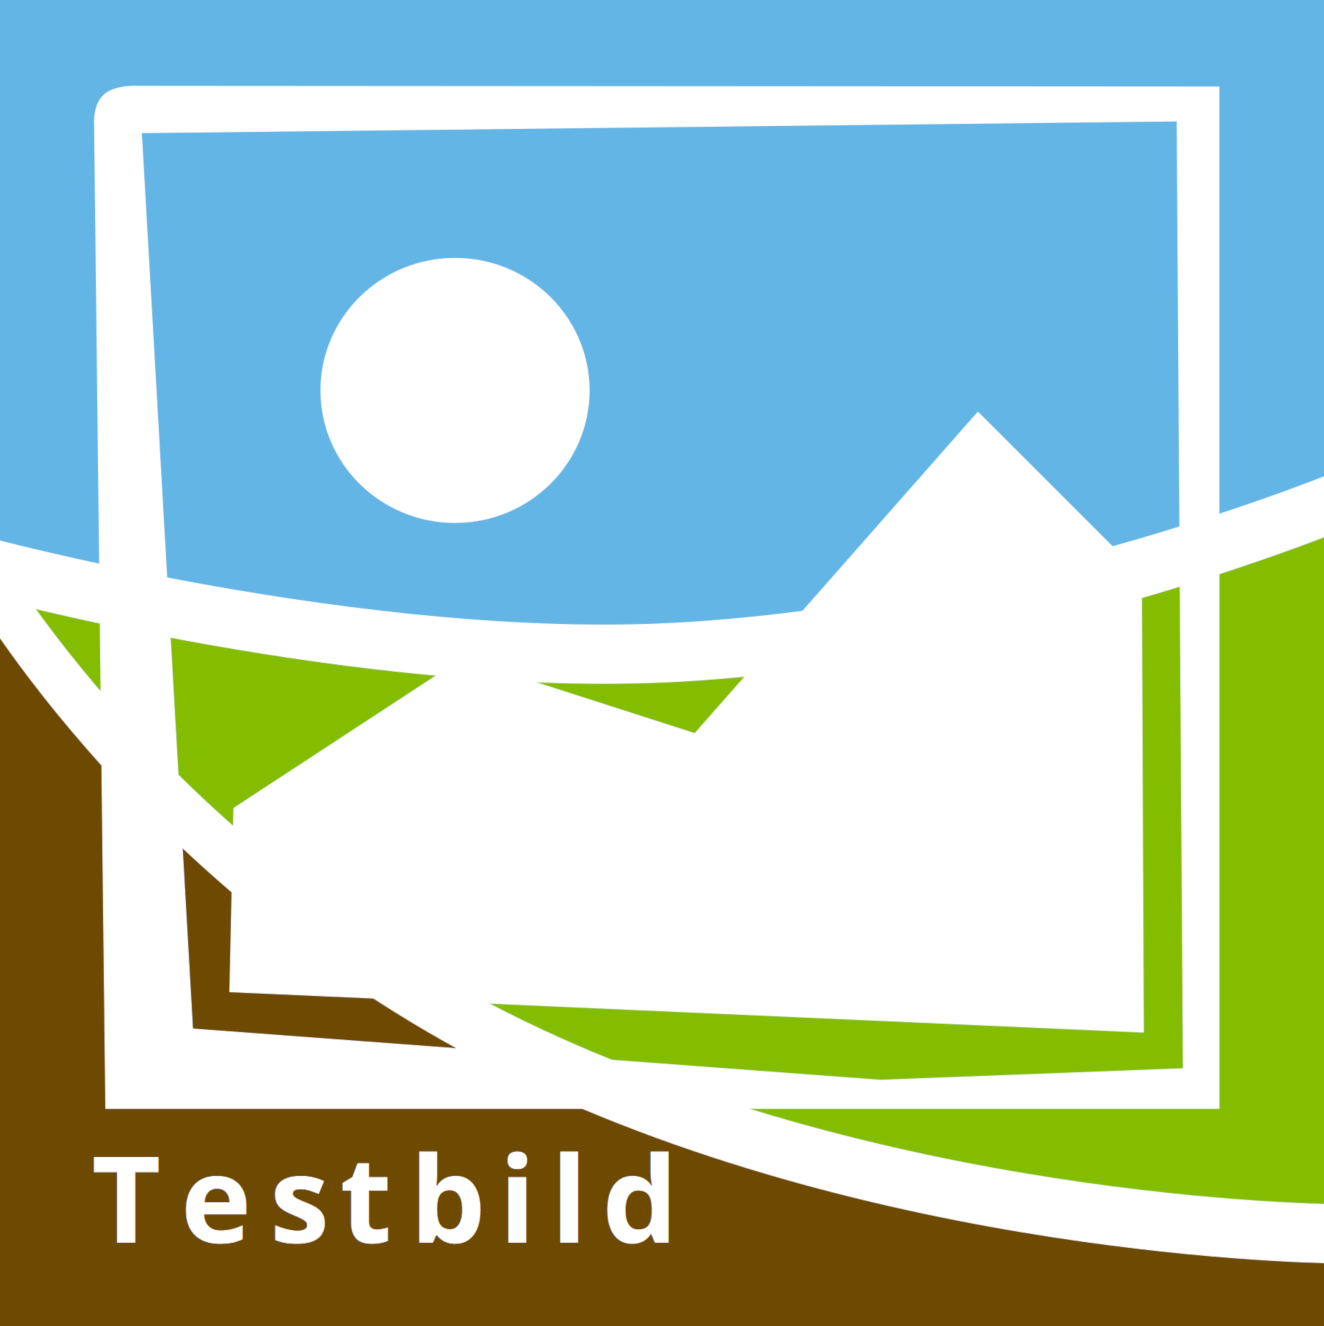 Kvadratisk testbild i blått, grönt och brunt med en ikon av en bildsymbol. Symbolen visar ett berg med en sol. Bilden innehåller texten "Testbild".